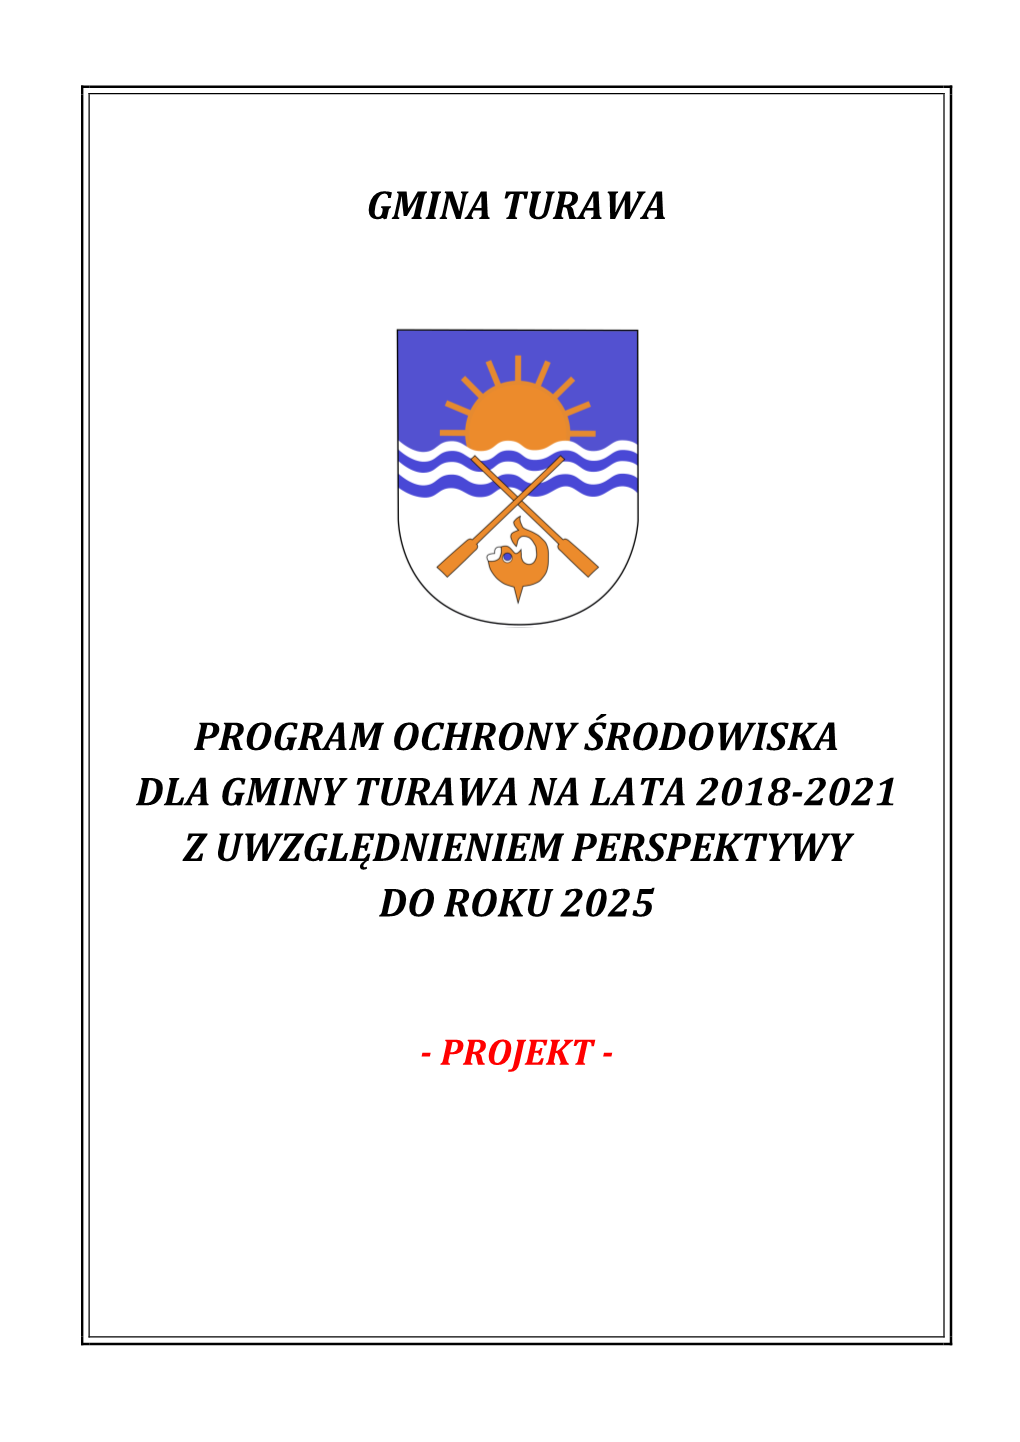 Gmina Turawa Program Ochrony Środowiska Dla Gminy Turawa Na Lata 2018-2021 Z Uwzględnieniem Perspektywy Do Roku 2025